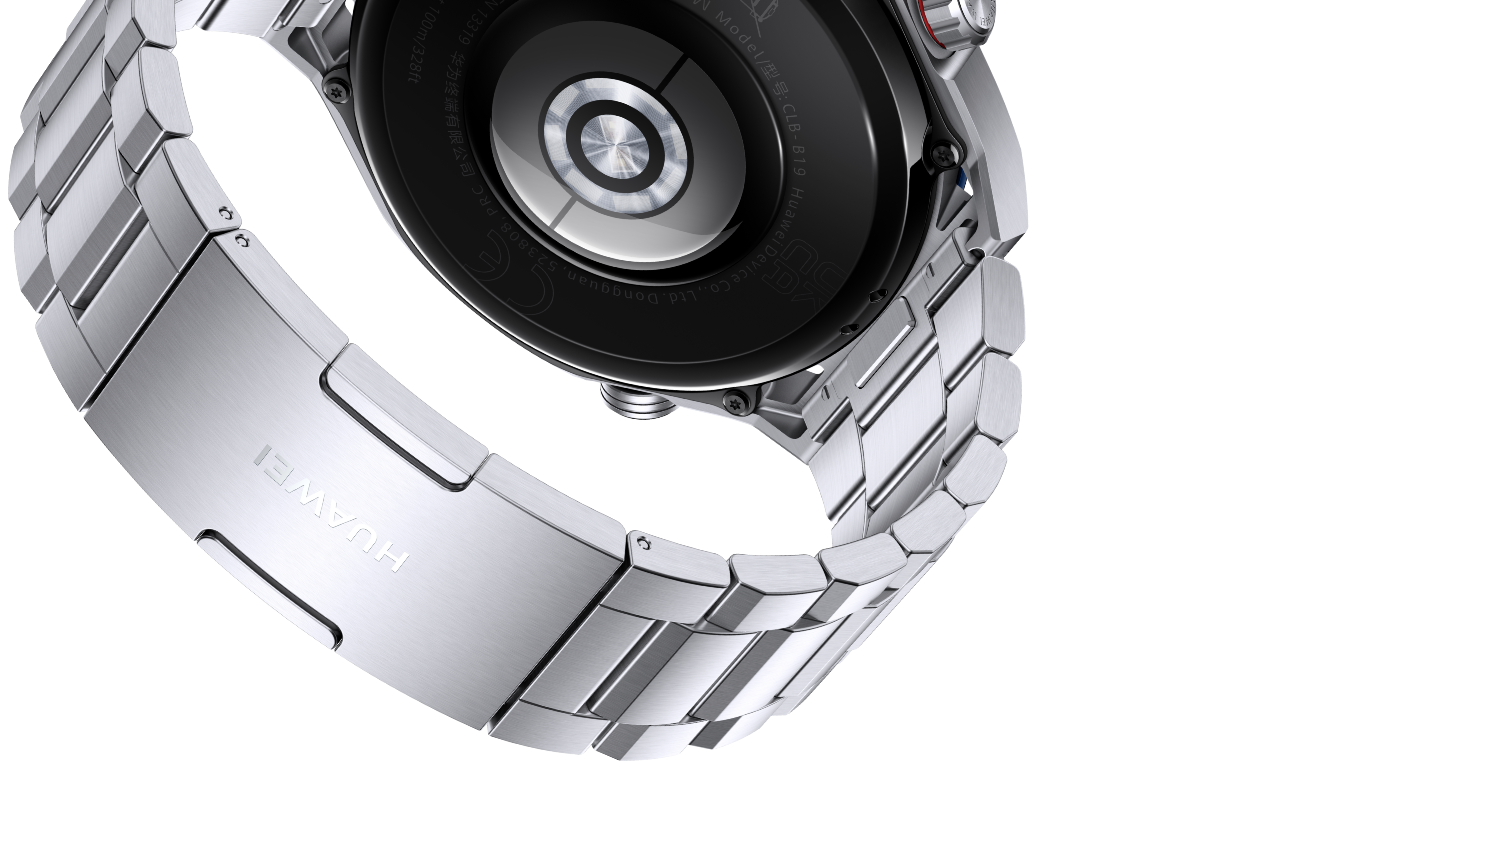  HUAWEI Watch Ultimate Smartwatch, iOS y Android, innovador  material de metal líquido, tecnología de buceo de 328.1 ft, duración de la  batería de 14 días, gestión de la salud durante todo